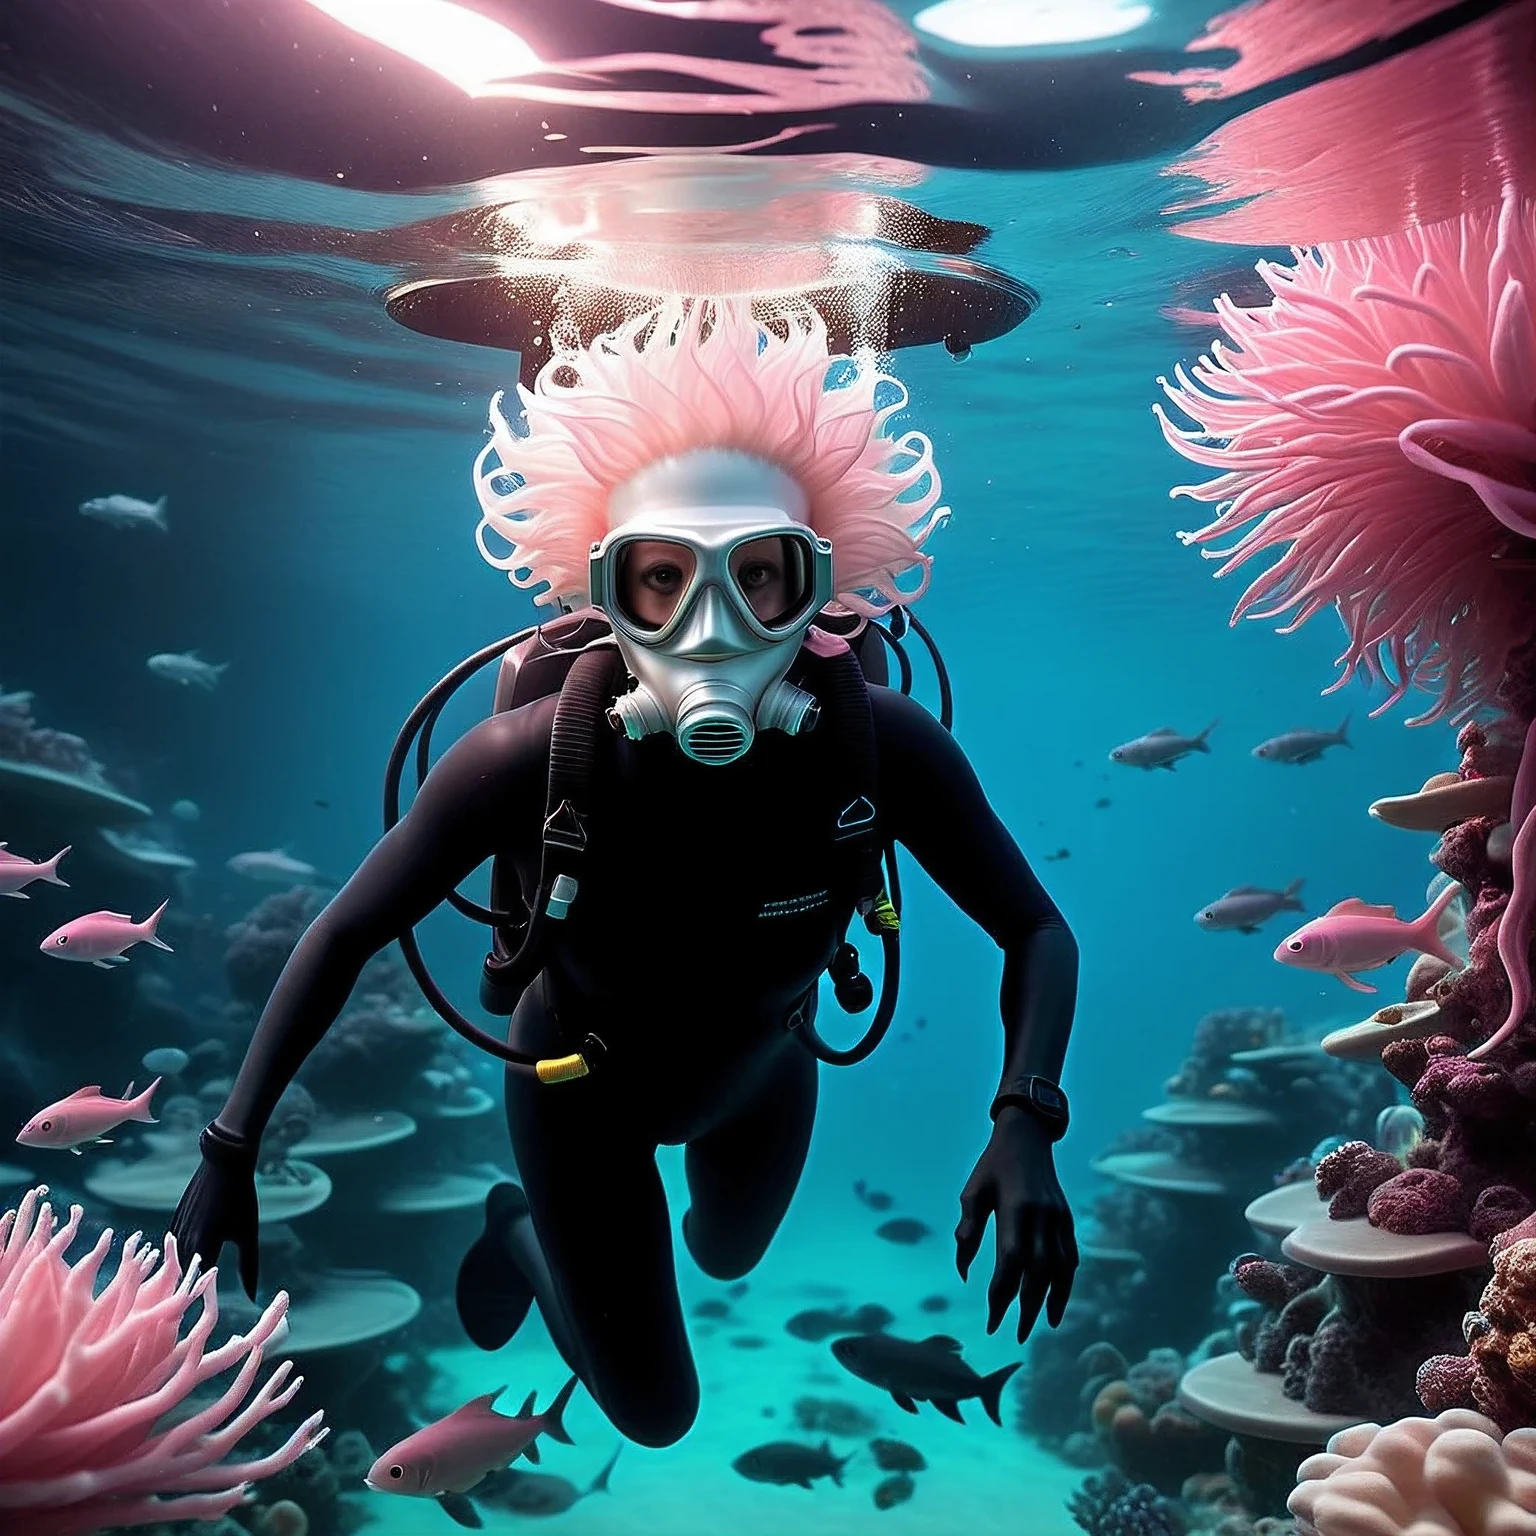 Красивое фото было сделано под водой светло-розового океана на неизвестном самолете., антропоид-гуманоид-инопланетянин-ныряльщик ныряет в глубины розового океана, инопланетянин в водолазной маске с дыхательной трубкой, инопланетный водолаз показан подробно, инопланетянин окружен неизвестными красивыми инопланетными рыбами и морскими растениями инопланетного океана, настоящийistic photo, RAW-стиль, настоящий, действительный, несуществующий, вымышленный